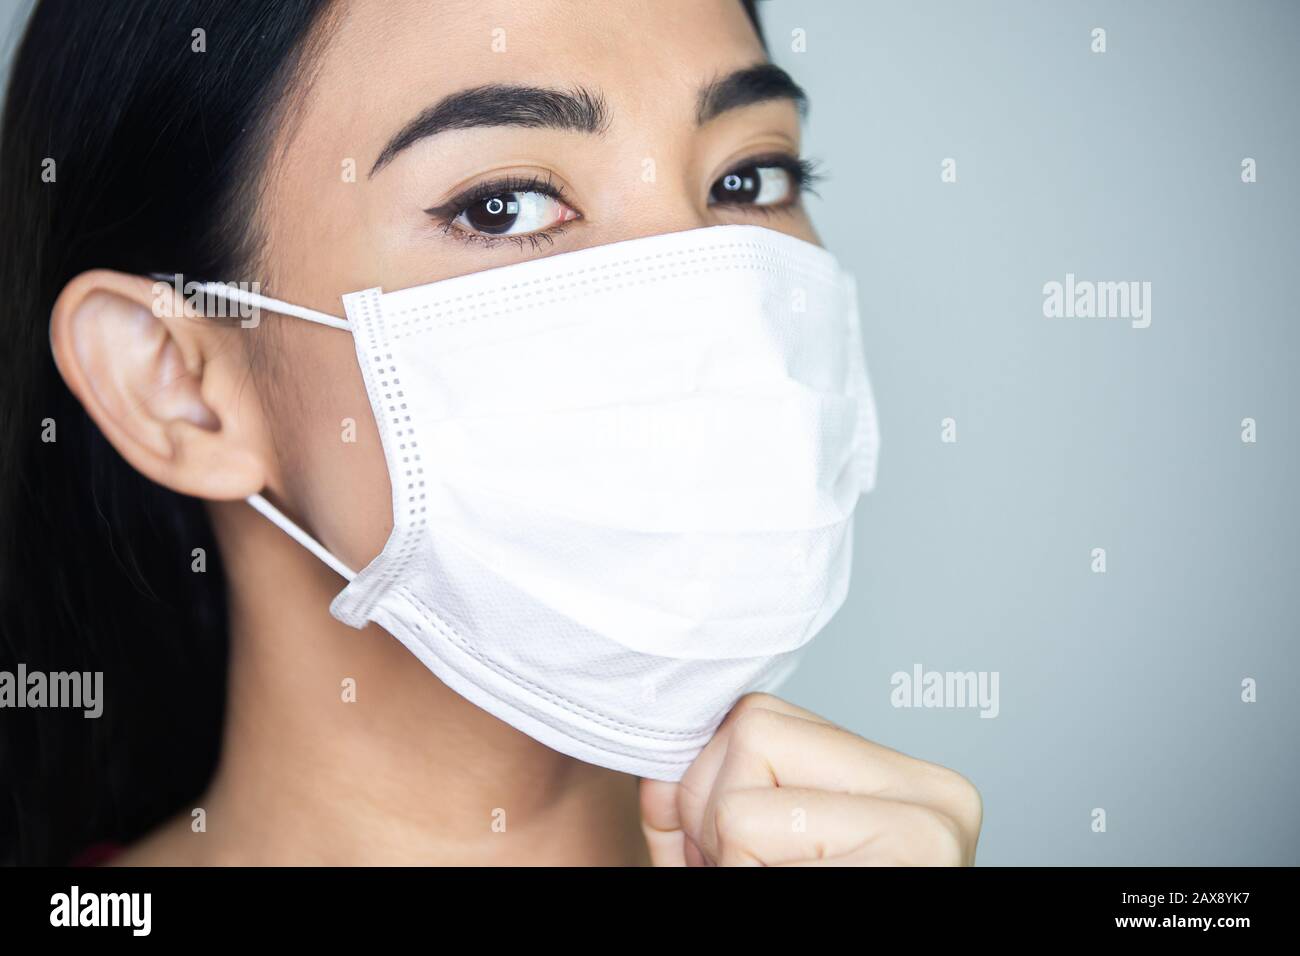 Una mujer que lleva máscara médica desechable para evitar virus contagiosos. Foto de stock